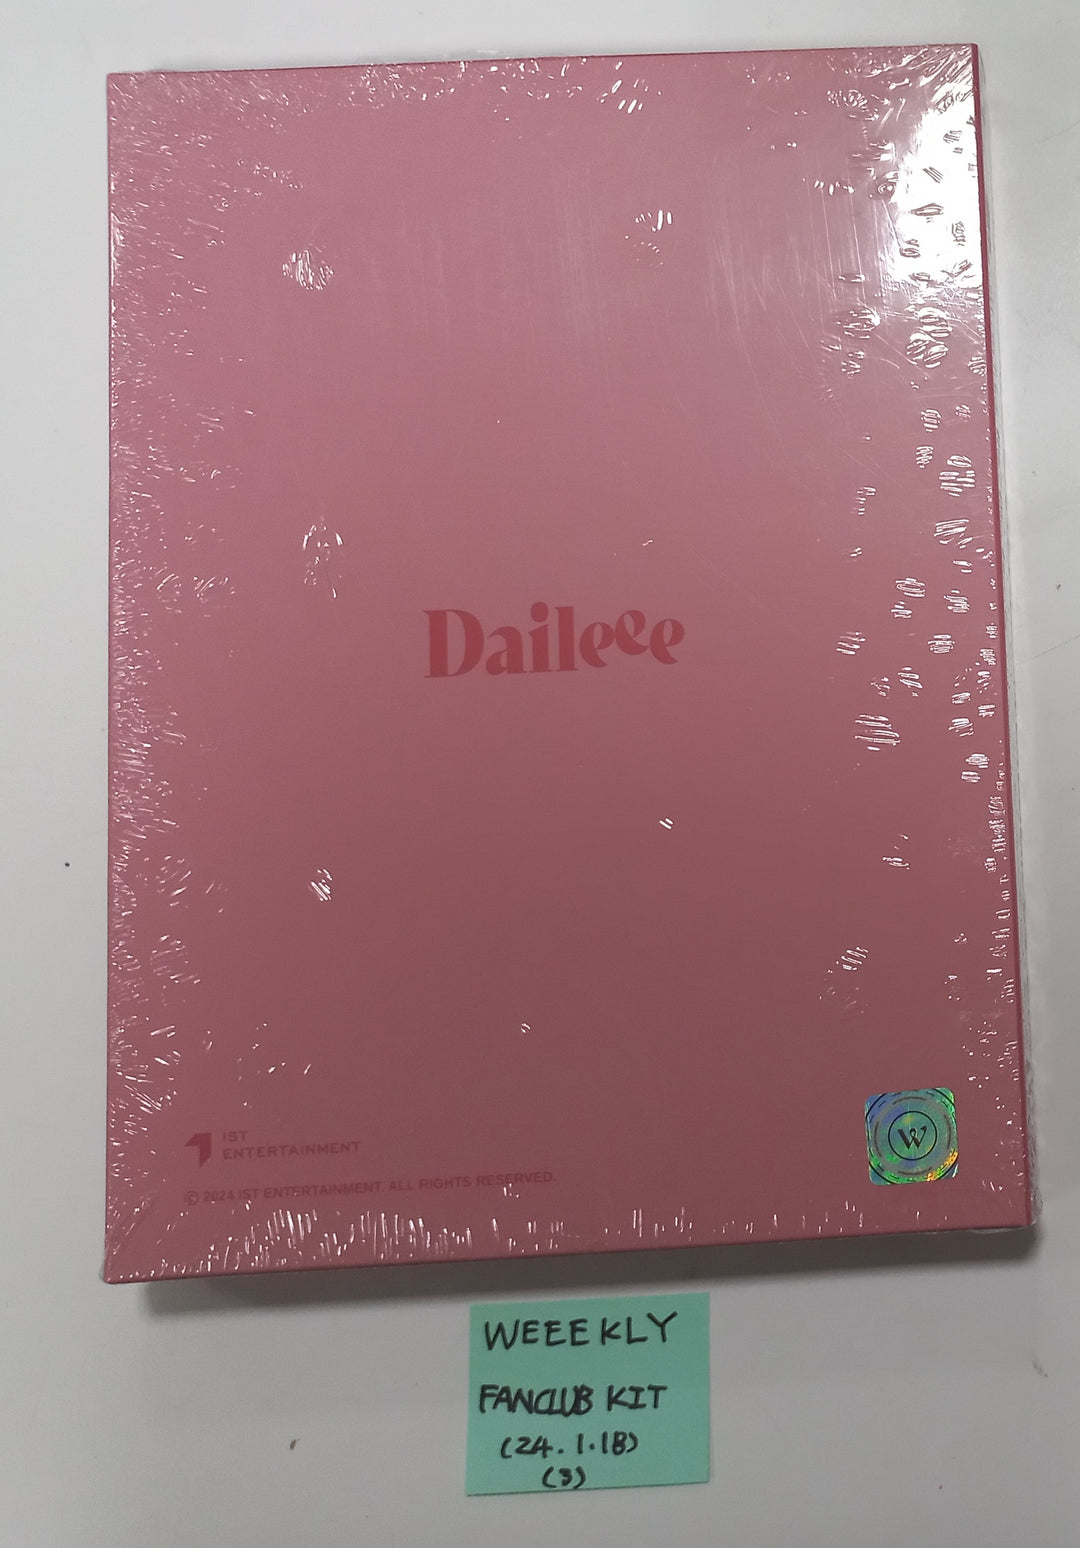 Weeekly OFFICIAL FANCLUB 1st Daileee - Official Fan Club Kit [24.1.18]